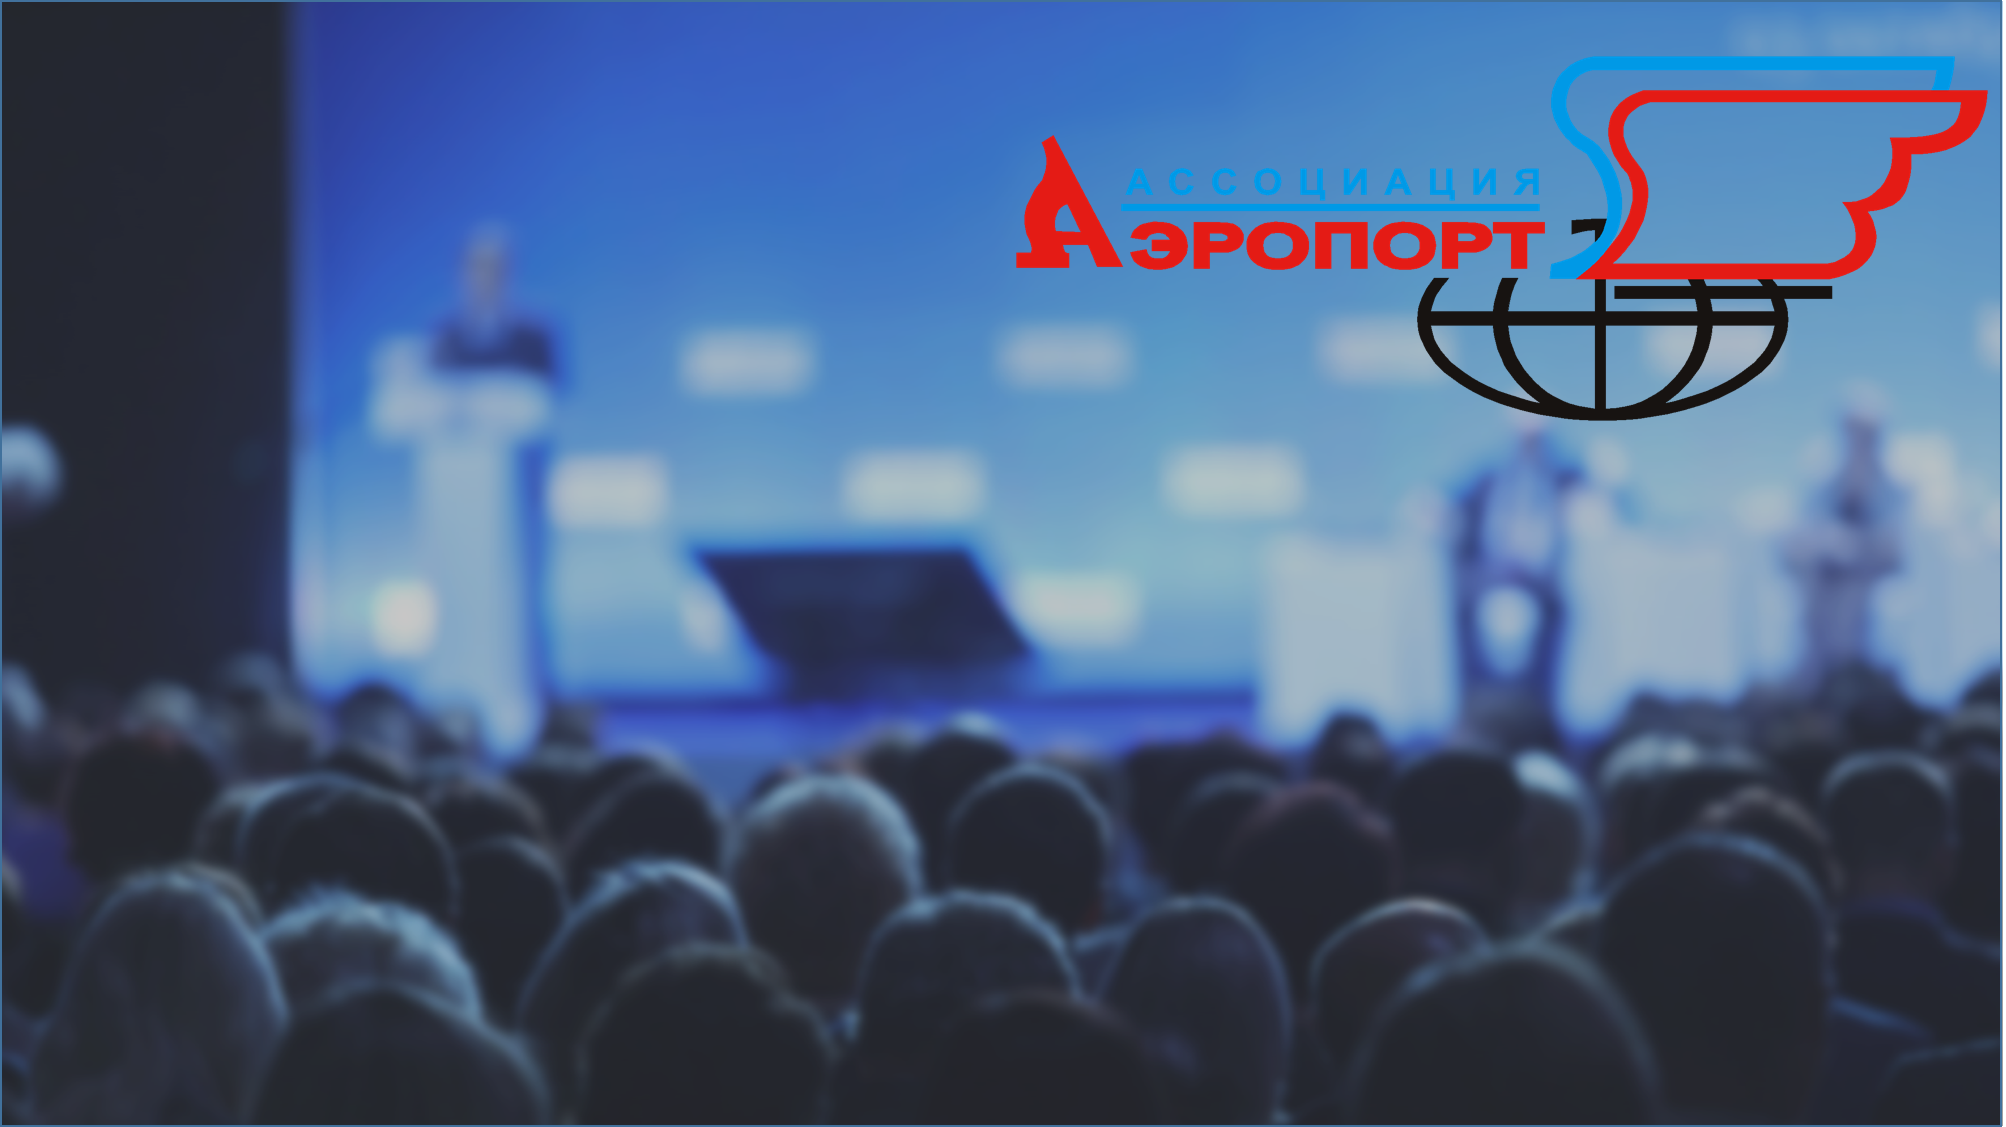 Ассоциация "Аэропорт": участие в конференции 